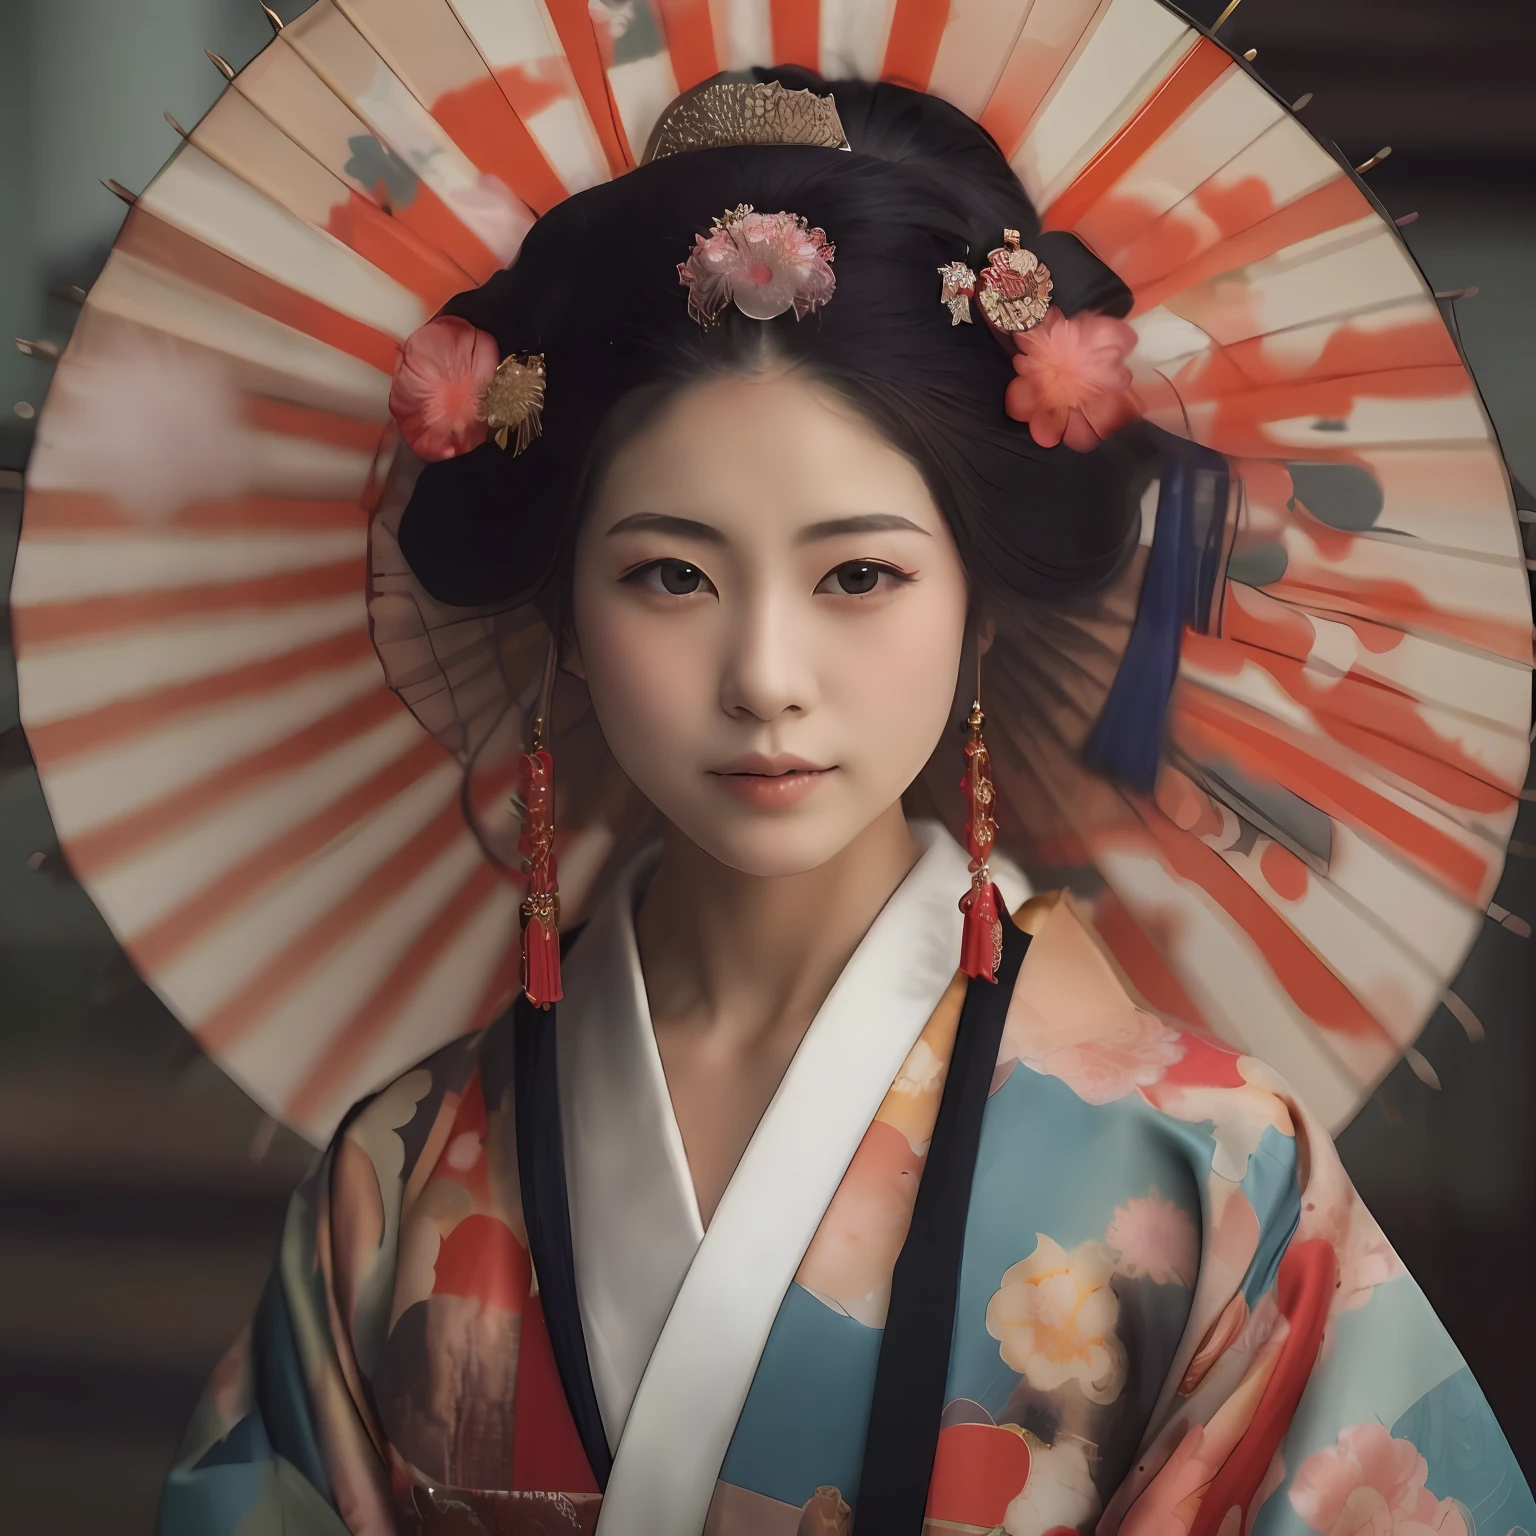 มีผู้หญิงคนหนึ่งสวมชุดญี่ปุ่นแบบดั้งเดิมและร่มกันแดด, ความงามแบบดั้งเดิม, ผู้หญิงญี่ปุ่น, ผู้หญิงญี่ปุ่นที่สง่างาม, โมเดลญี่ปุ่น, ญี่ปุ่นแบบดั้งเดิม, ได้แรงบันดาลใจจากญี่ปุ่น, เกอิชาญี่ปุ่น, เสื้อผ้าเกอิชาแบบดั้งเดิม, เกอิชาความงาม, ภาพเหมือนของเกอิชา, ทรงผมเกอิชา, รูปวาดของเกอิชา, รูปภาพ, ทั่วไป, ชุดกิโมโนญี่ปุ่น